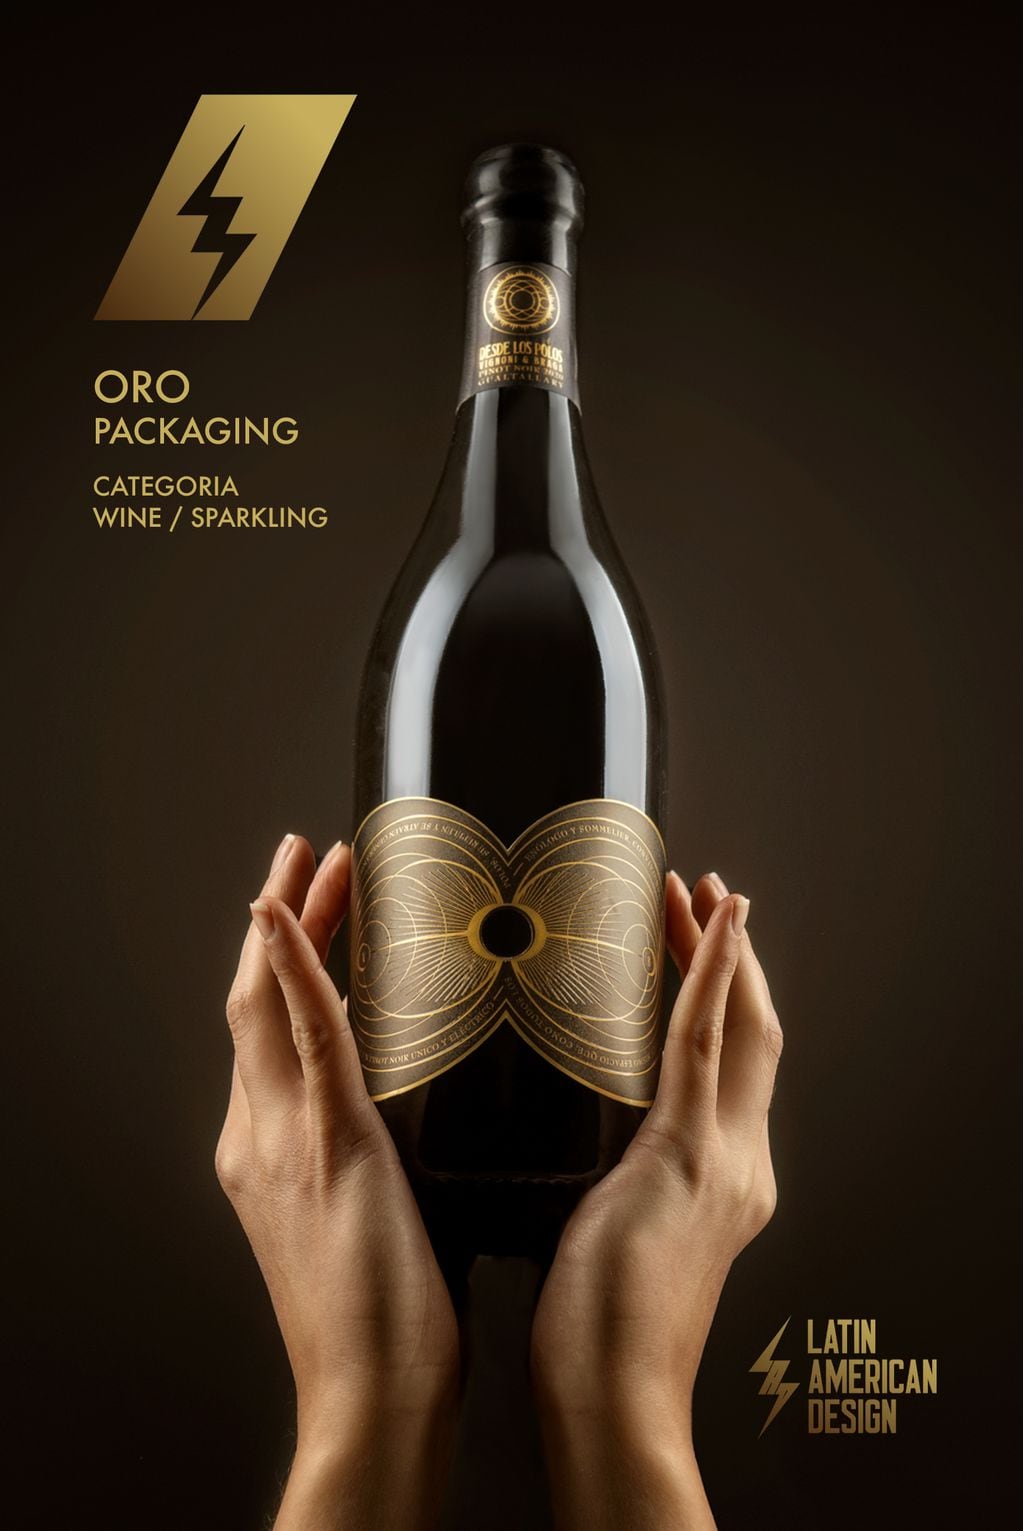 Esta es la mejor etiqueta de vinos en el continente según el Latin American Design Awards.